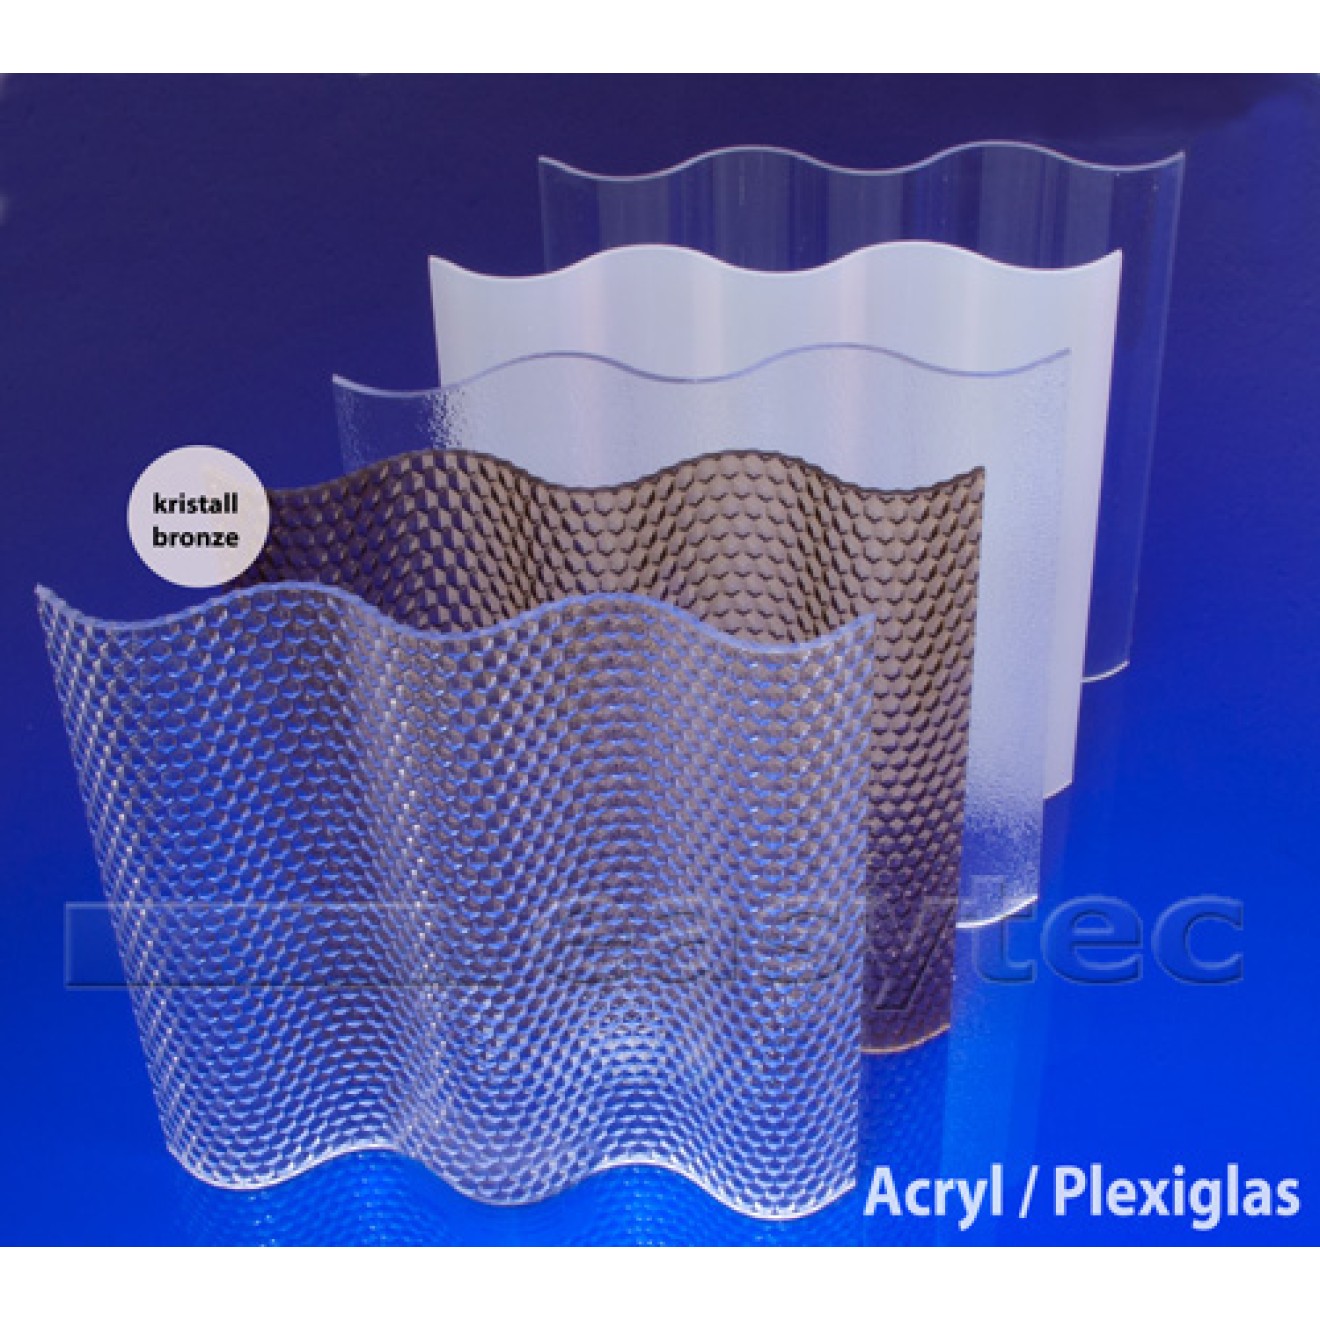 Acryl Lichtplatten 18/76 mit Wabenstruktur kristallbronze